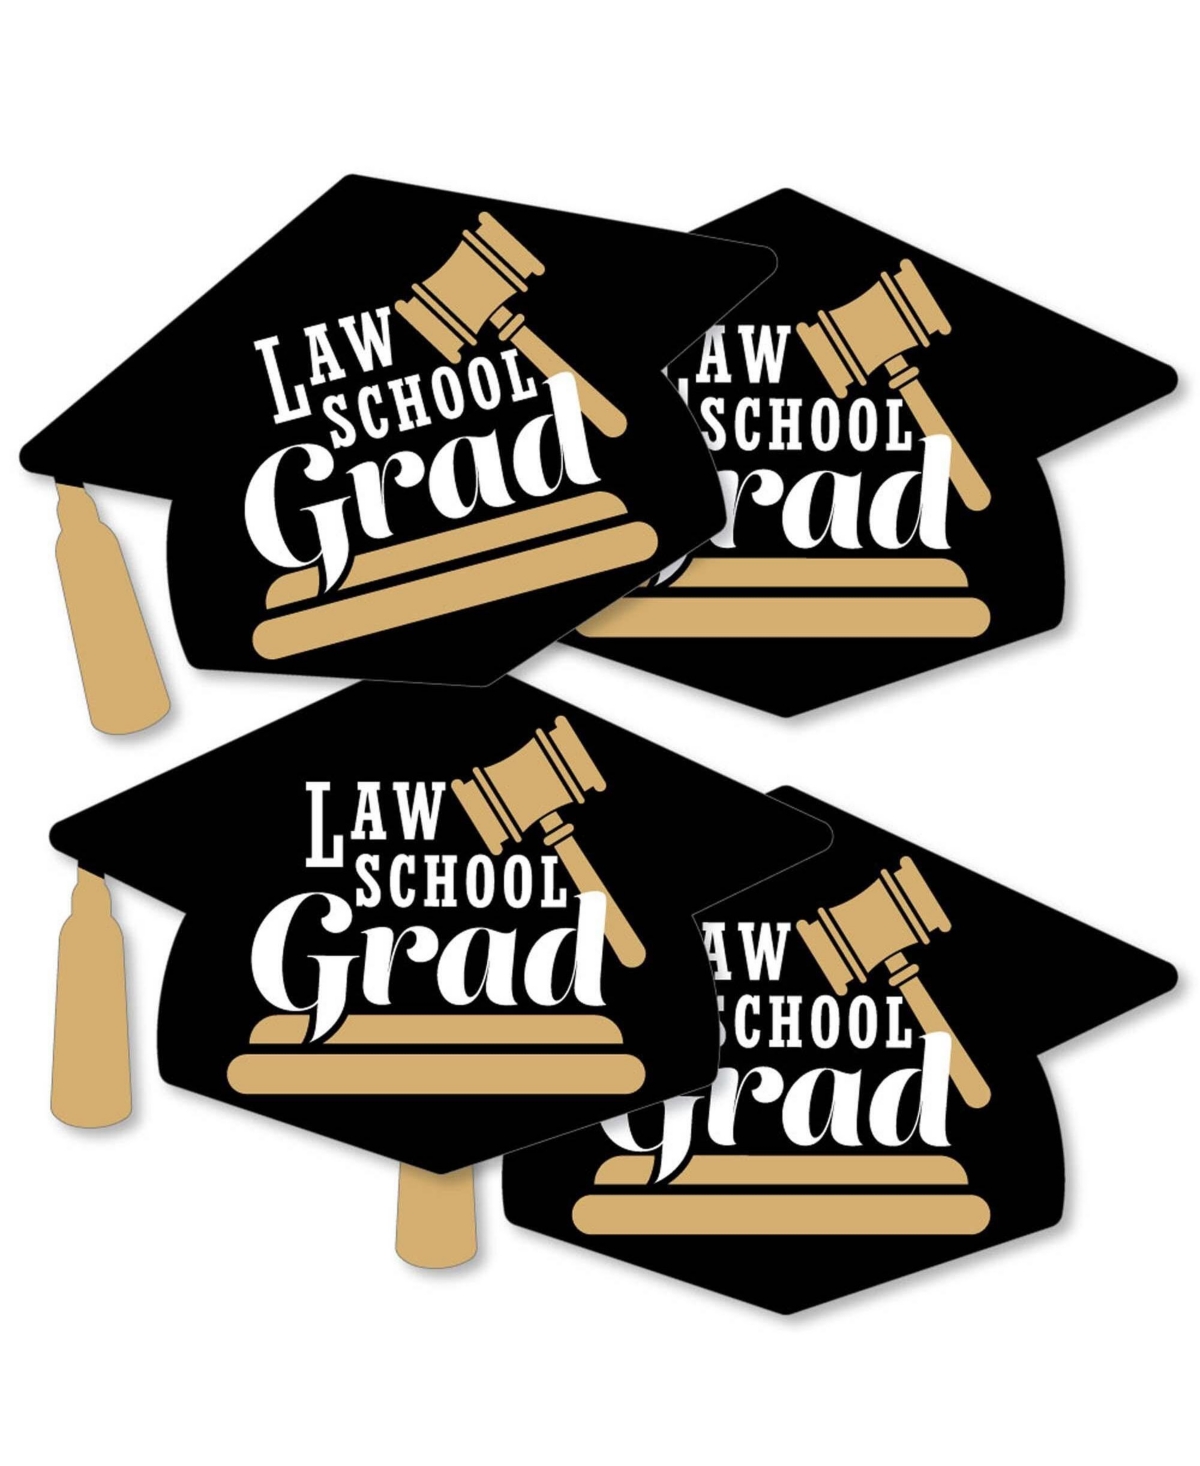 Law School Grad - Grad Cap Decorations Diy Graduation Party Essentials - 20 Ct